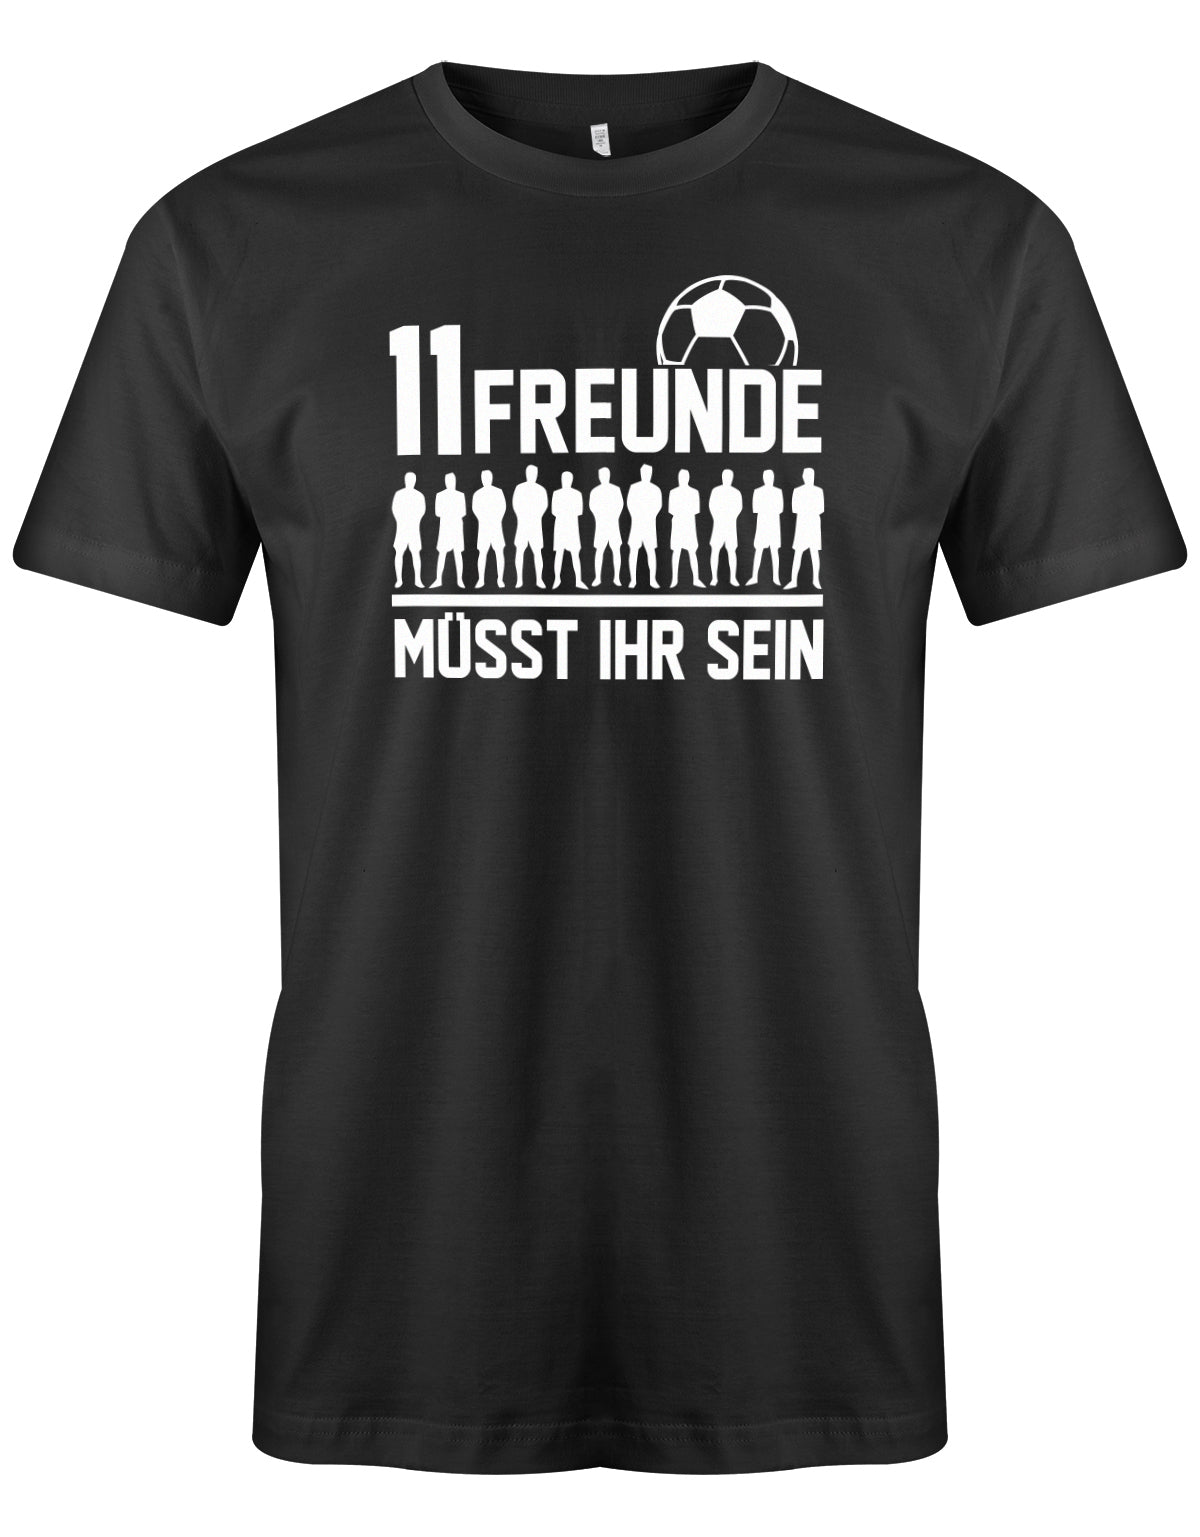 11 Freunde müsst ihr sein - Fußball - Herren T-Shirt Schwarz